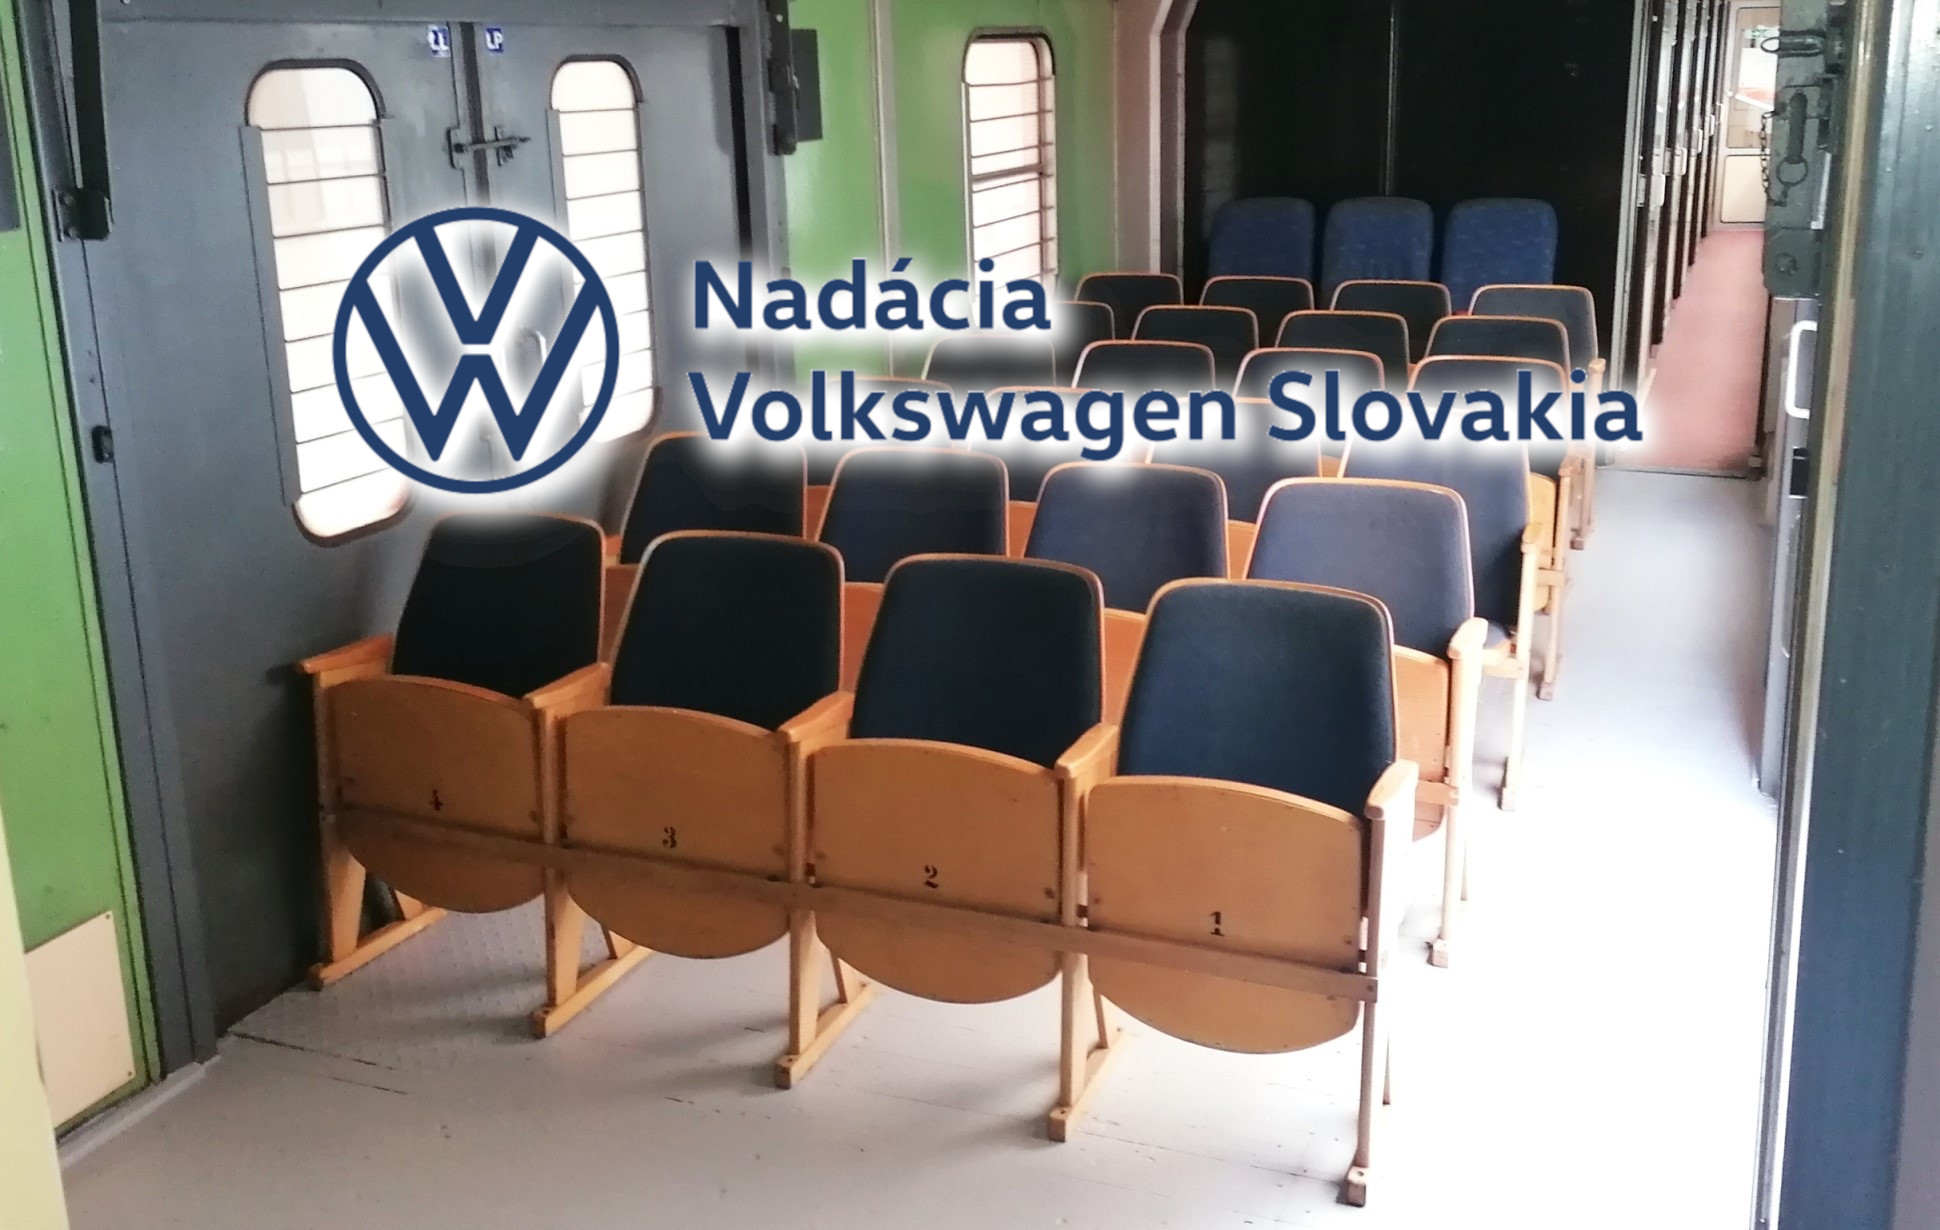 O našom projekte s nadáciou VW Slovakia